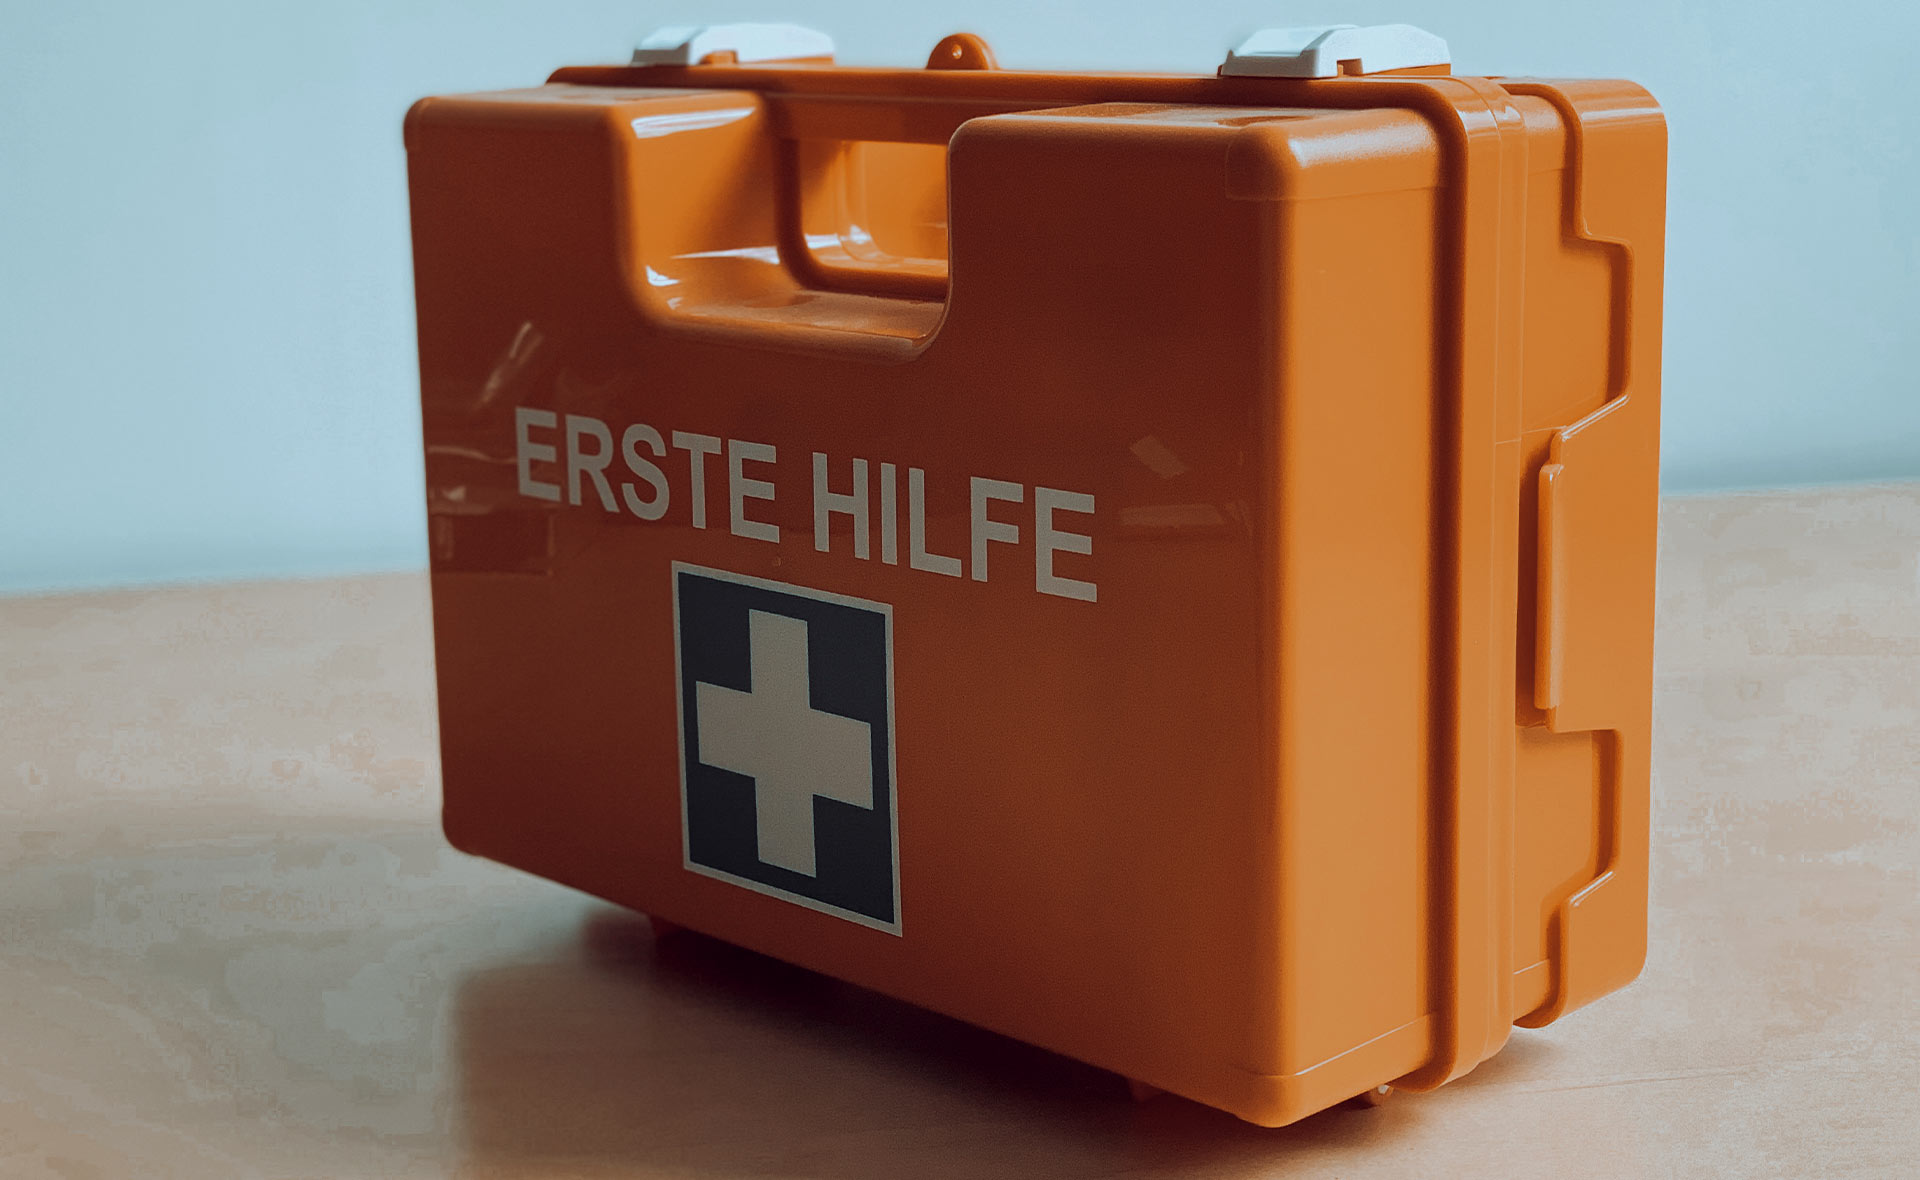 Orangefarbener Erste-Hilfe-Koffer mit dem Schriftzug 'ERSTE HILFE' und einem weißen Kreuz